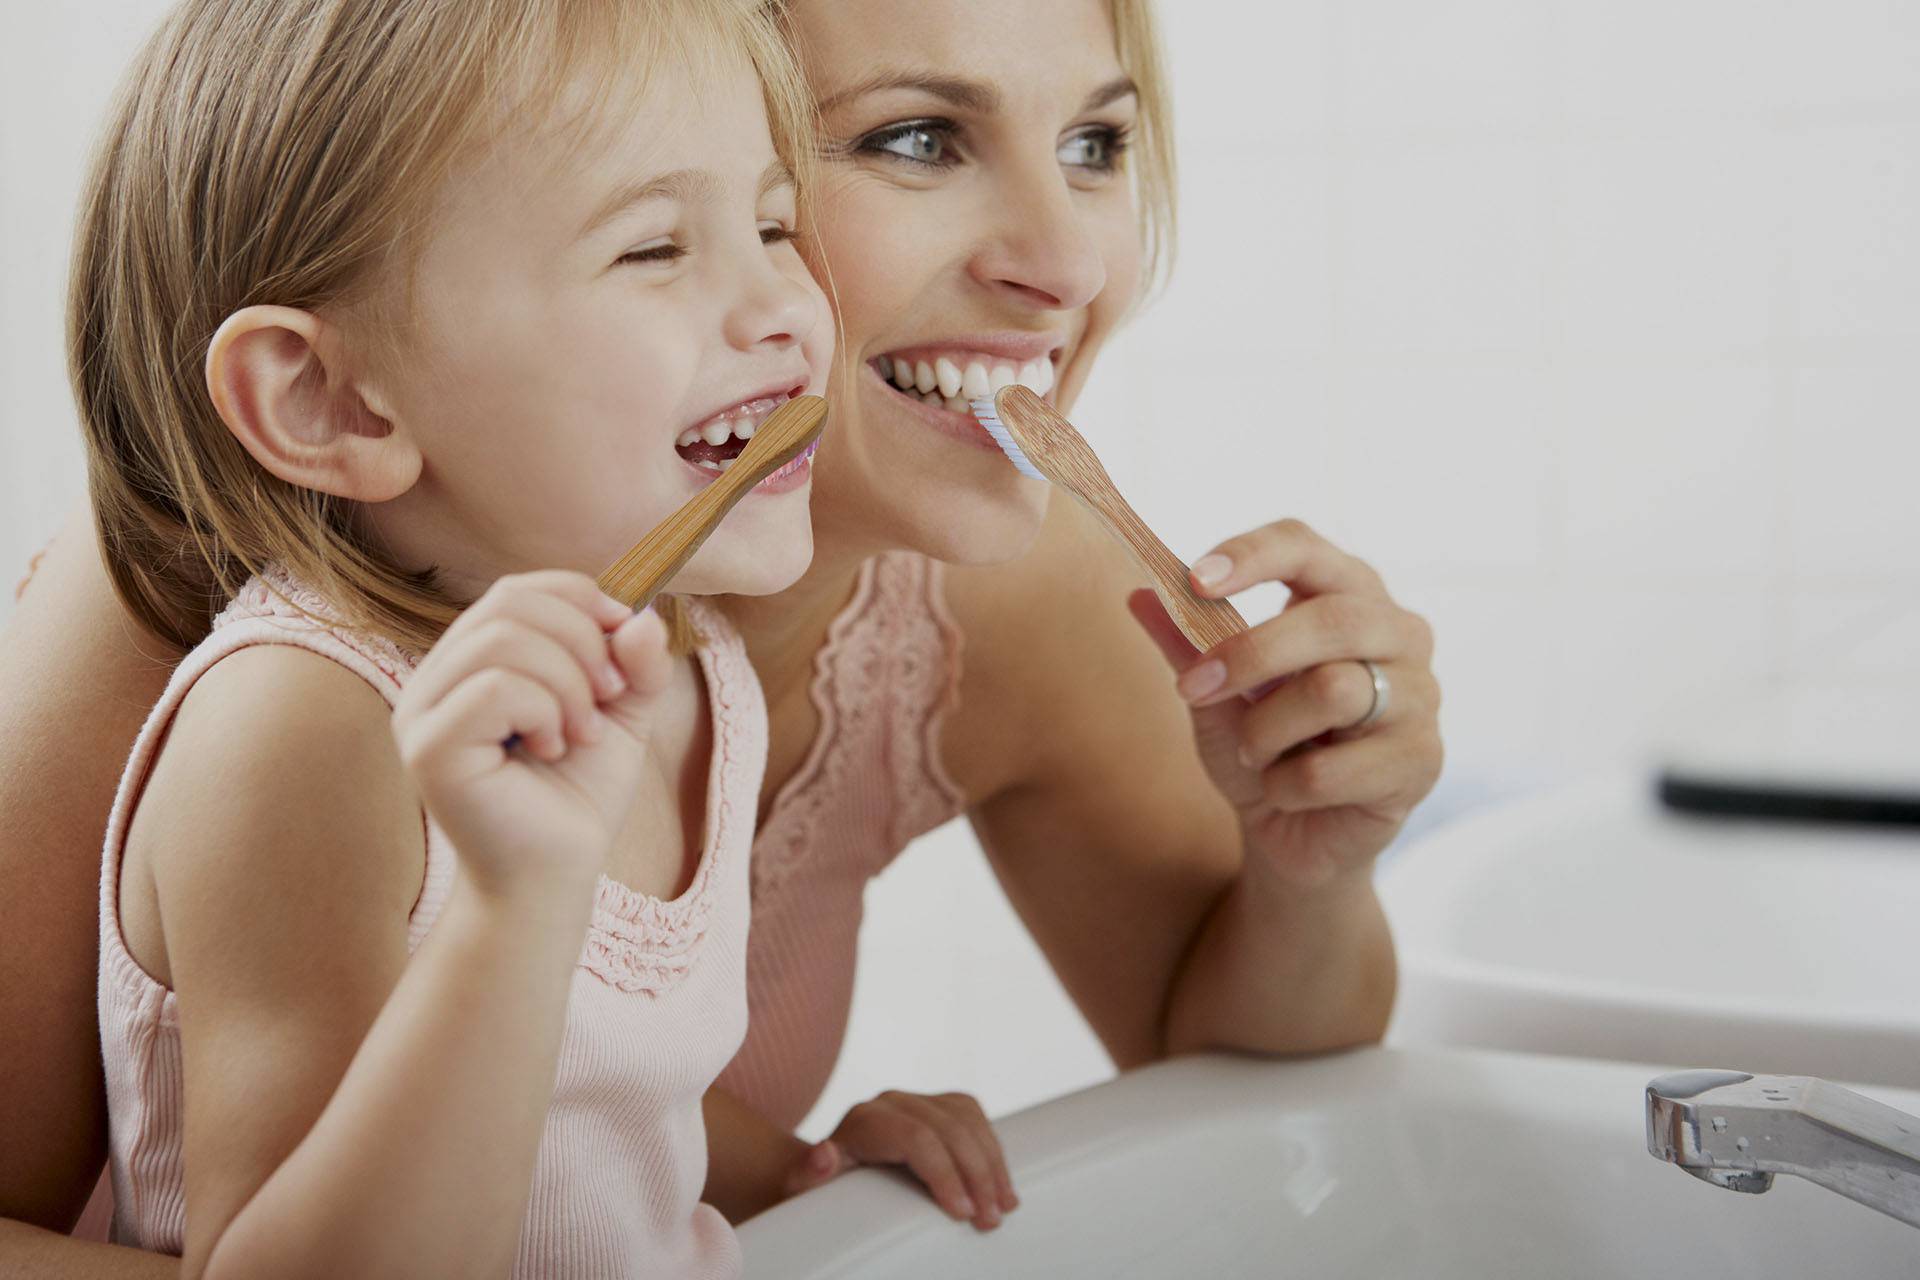 Когда начинать чистить зубки детям?